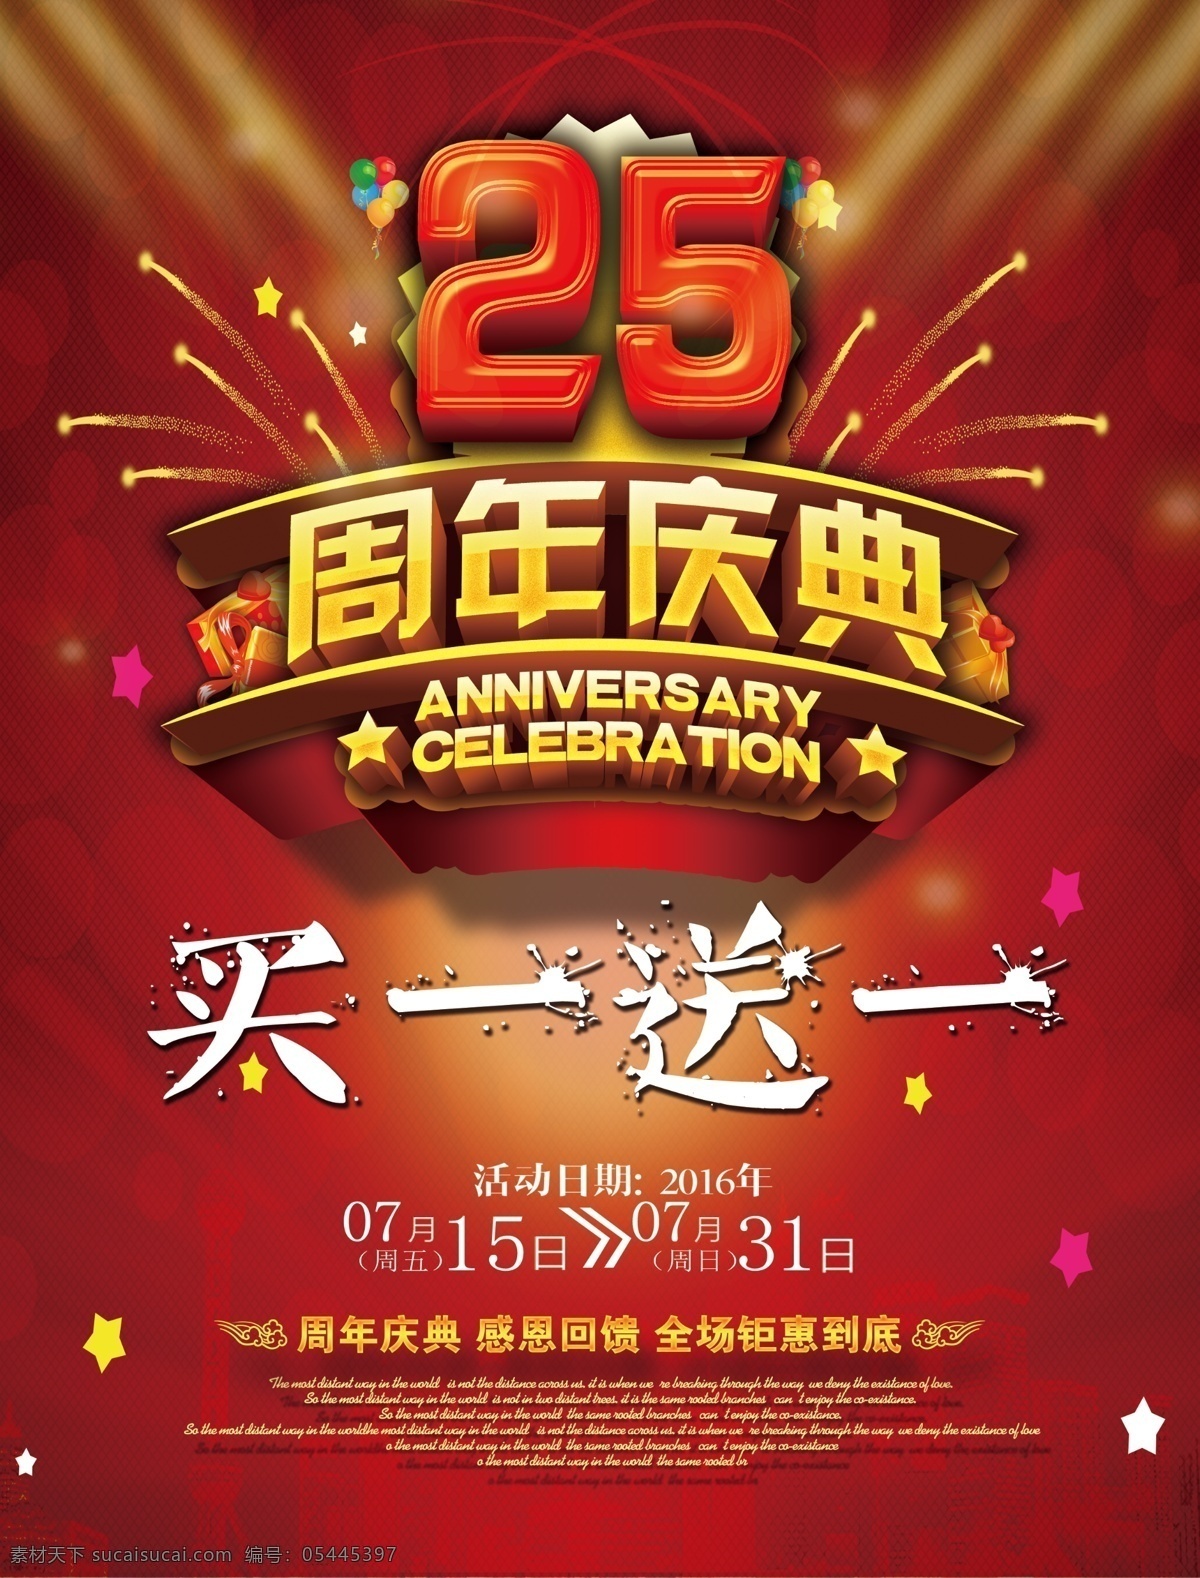 25周年庆典 周年庆 周年纪念 庆典 买一送一 25周年 红色背景 周年庆展板 周年庆素材